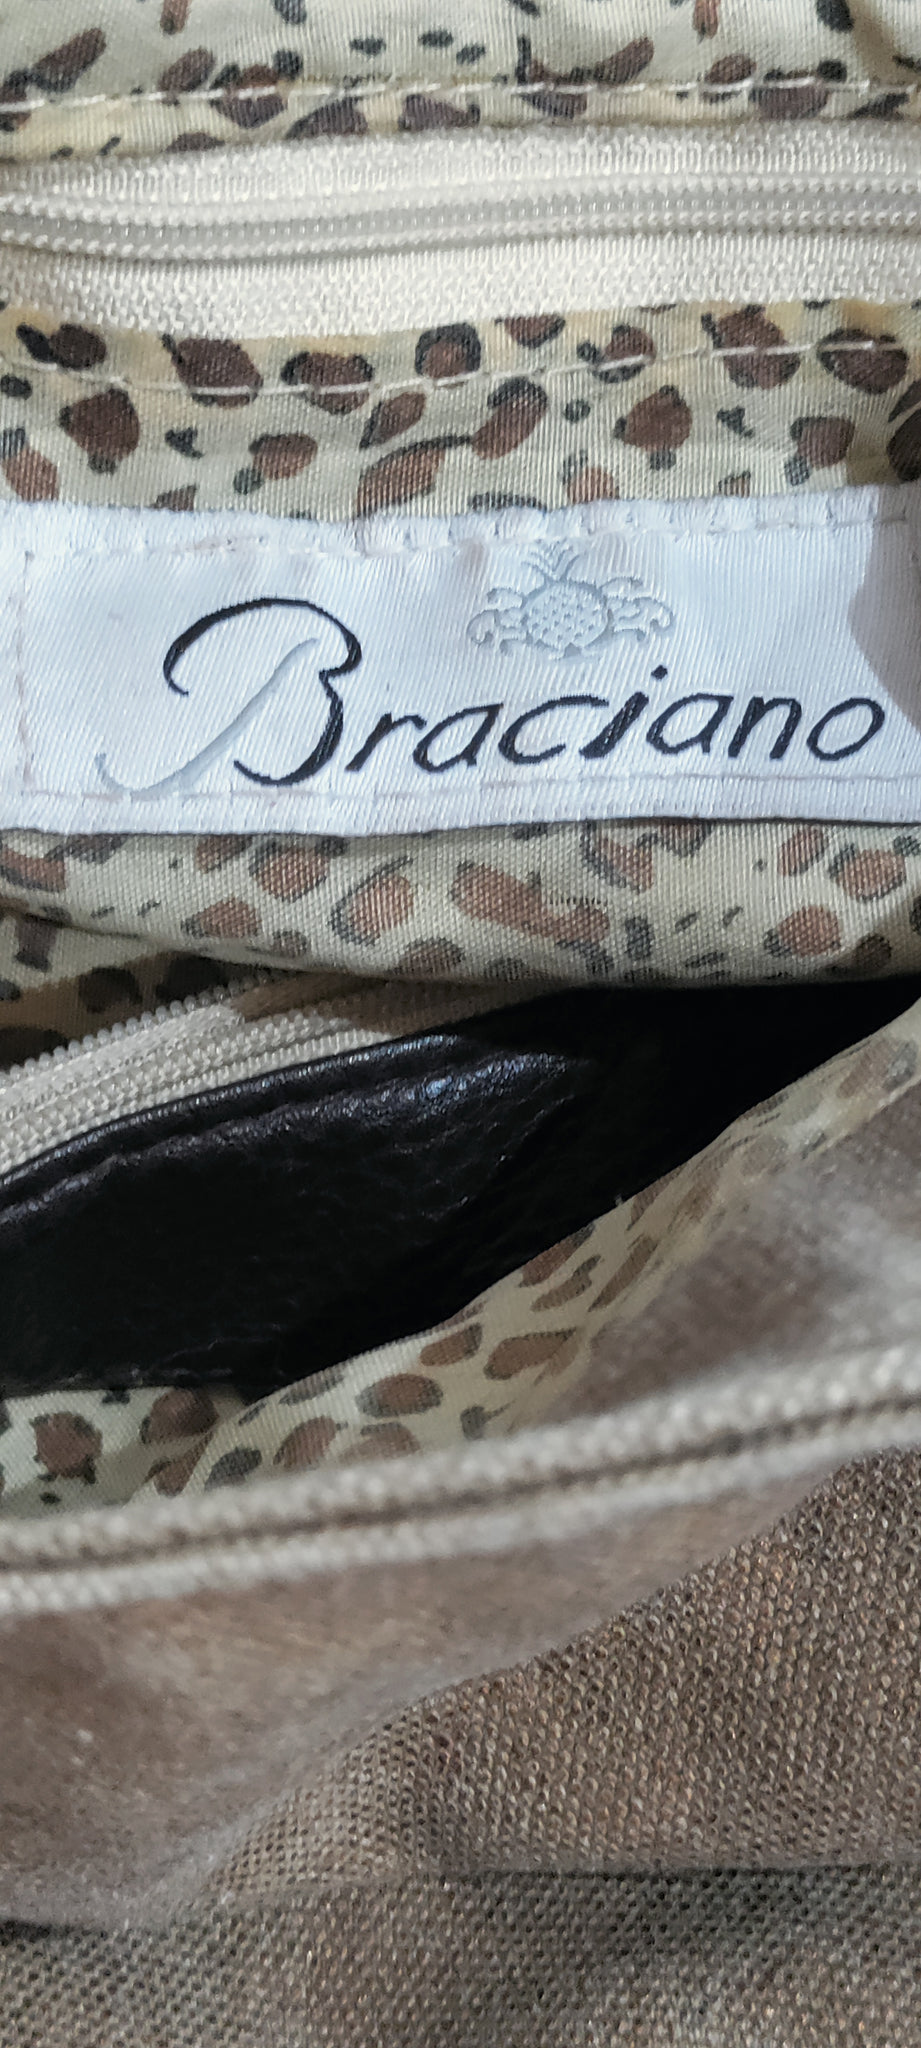 Braciano shoulder handbag